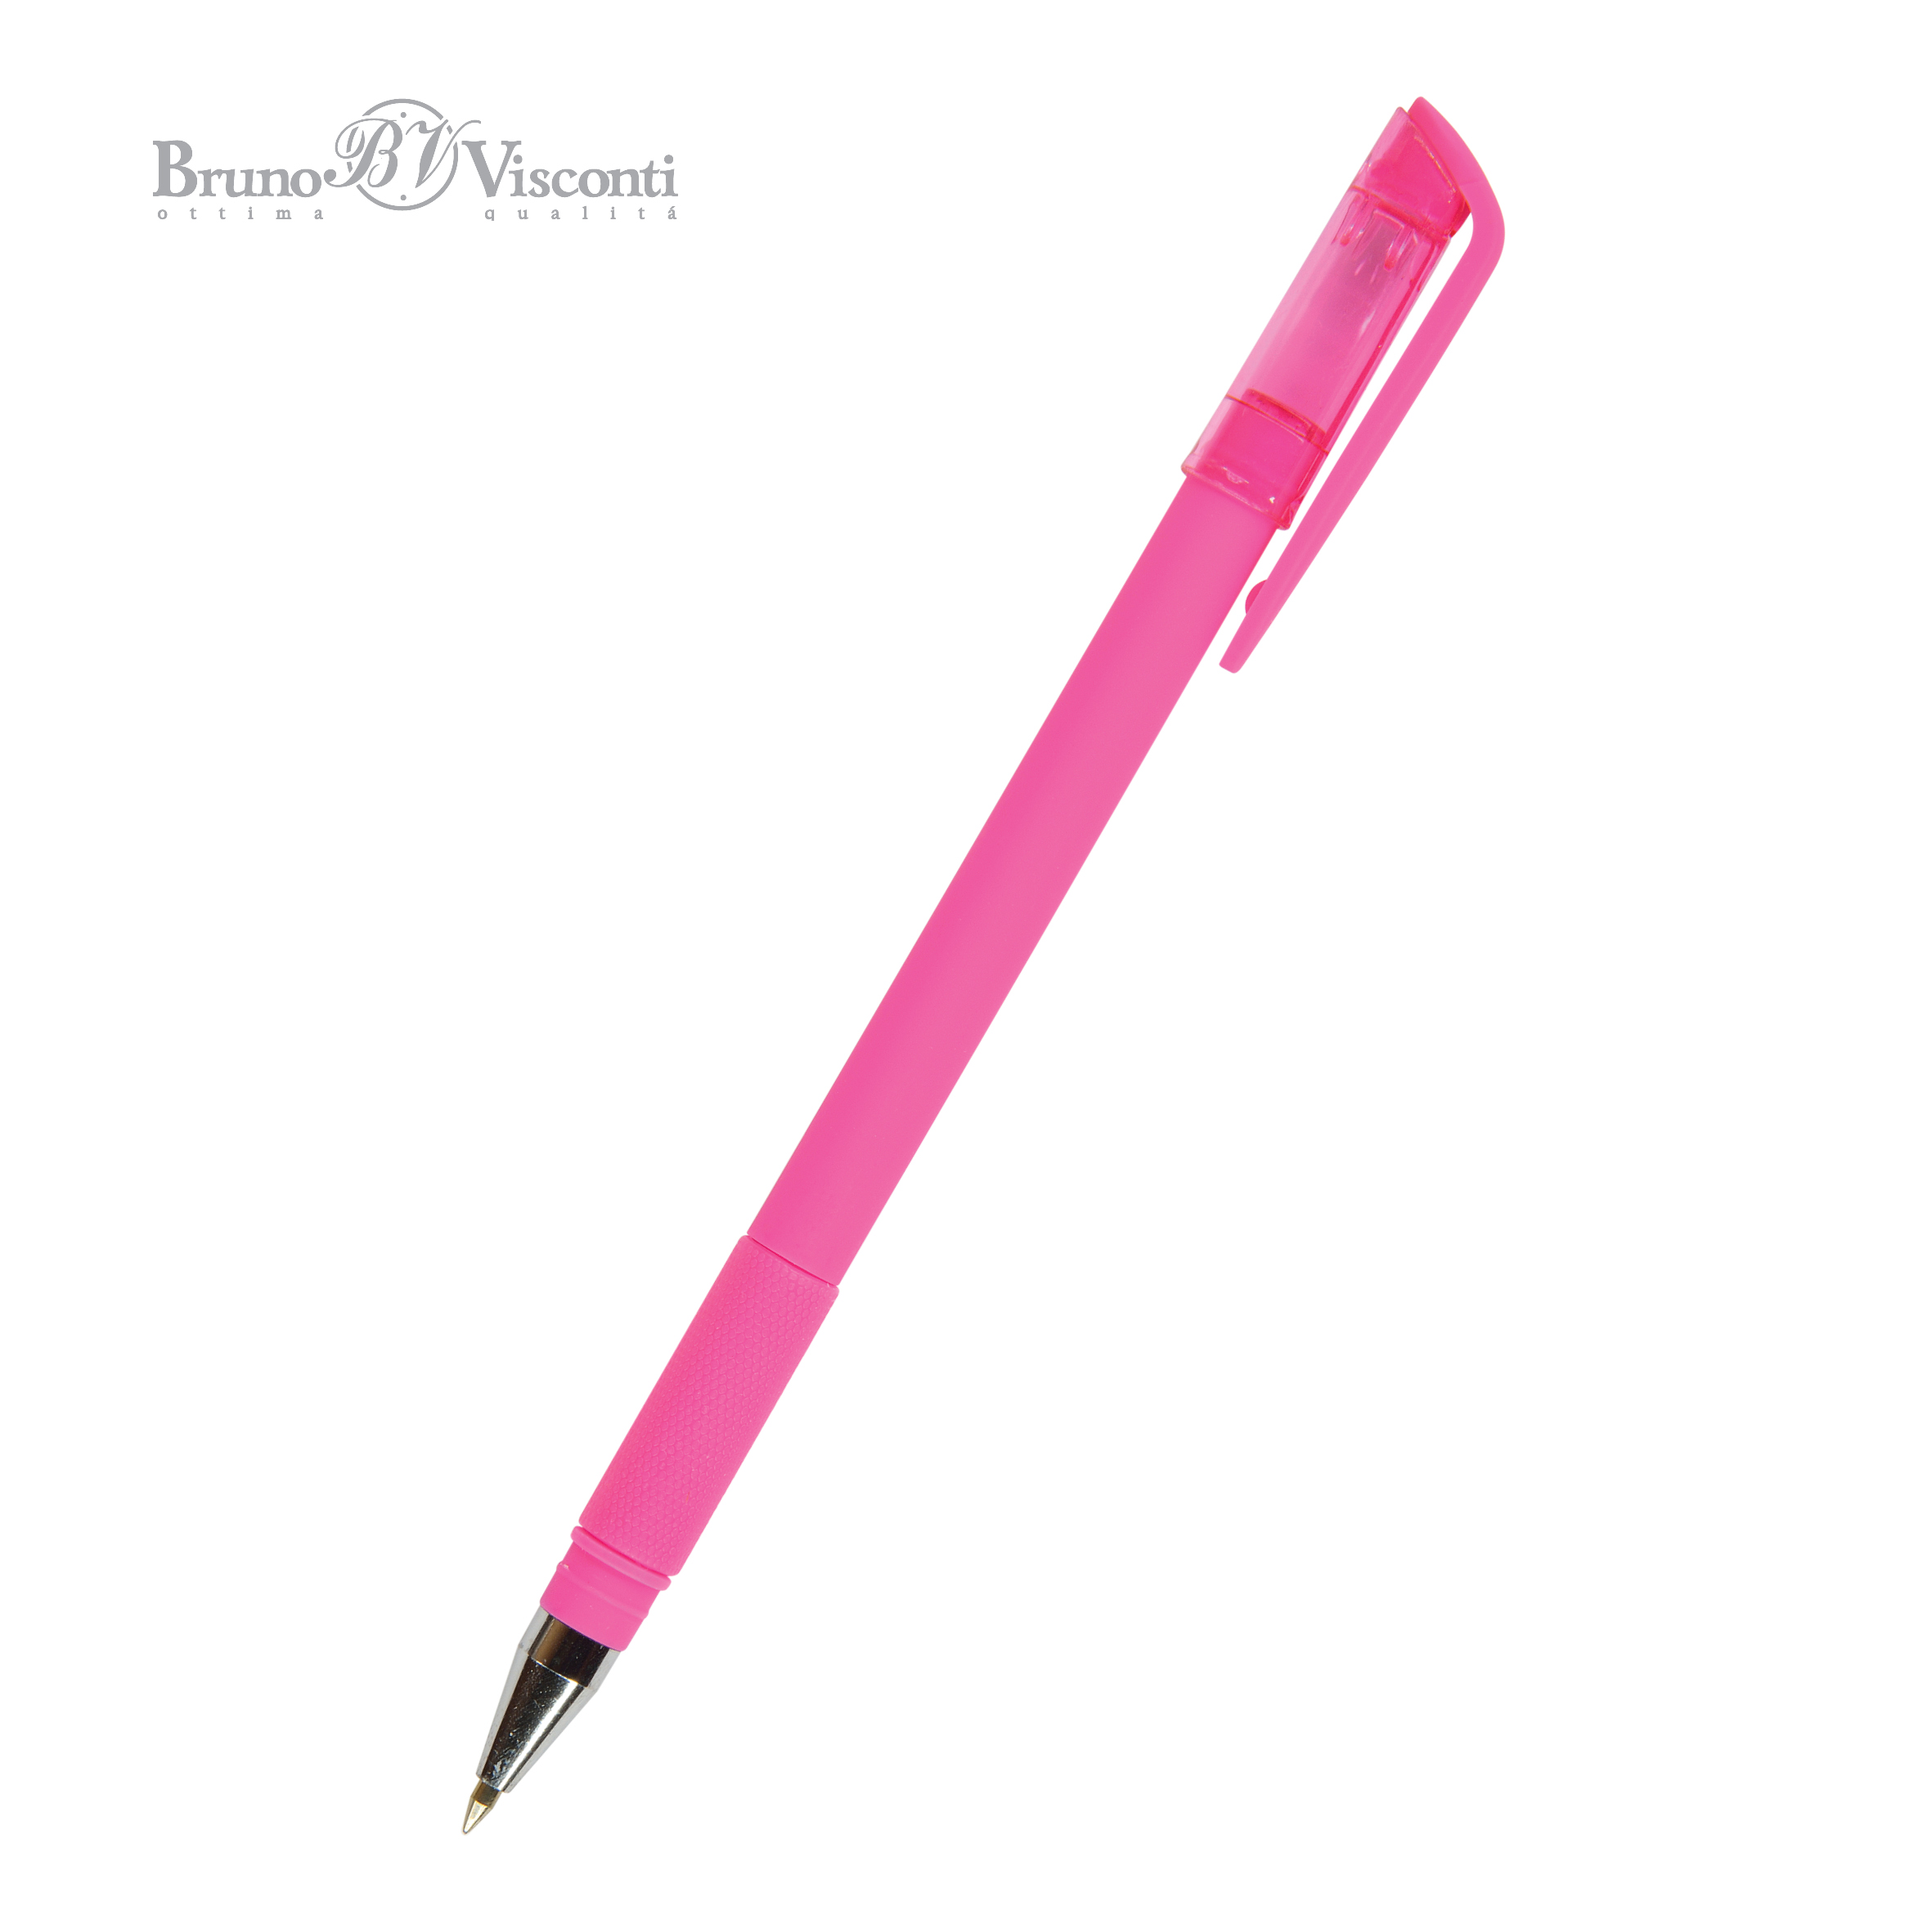 Ручка шариковая синяя BV EasyWrite special розов под персонализацию